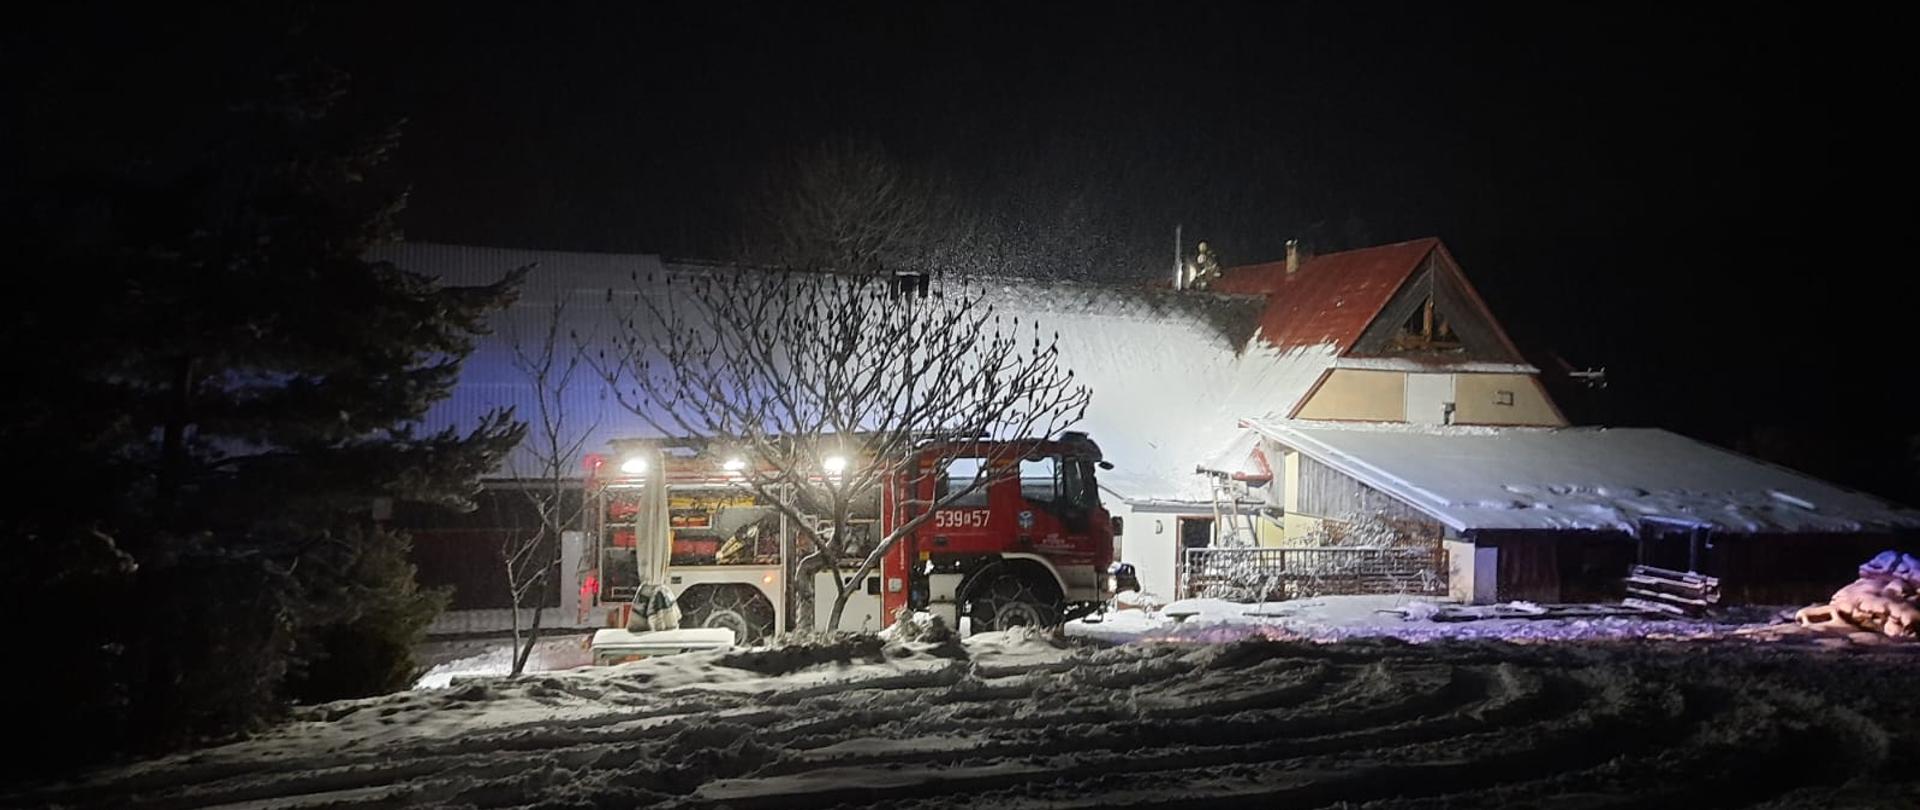 Zdjęcie przedstawia samochód pożarniczy na tle domu, w którym prowadzone są działania. 